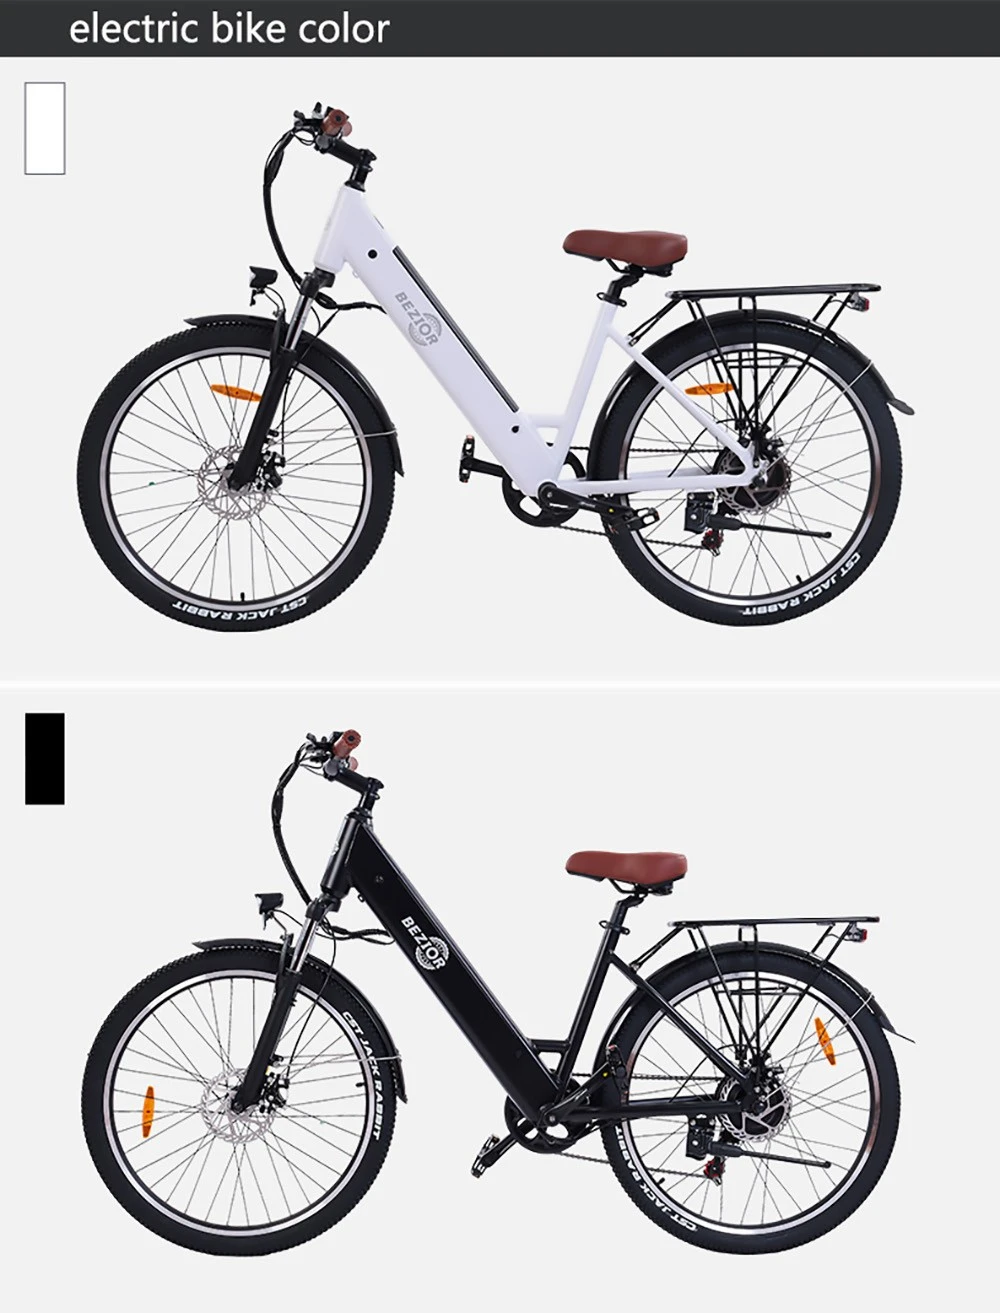 https://img.gkbcdn.com/d/202302/BEZIOR-M3-Electric-Bike-48V-500W-Motor-White-519569-11._p1_.jpg